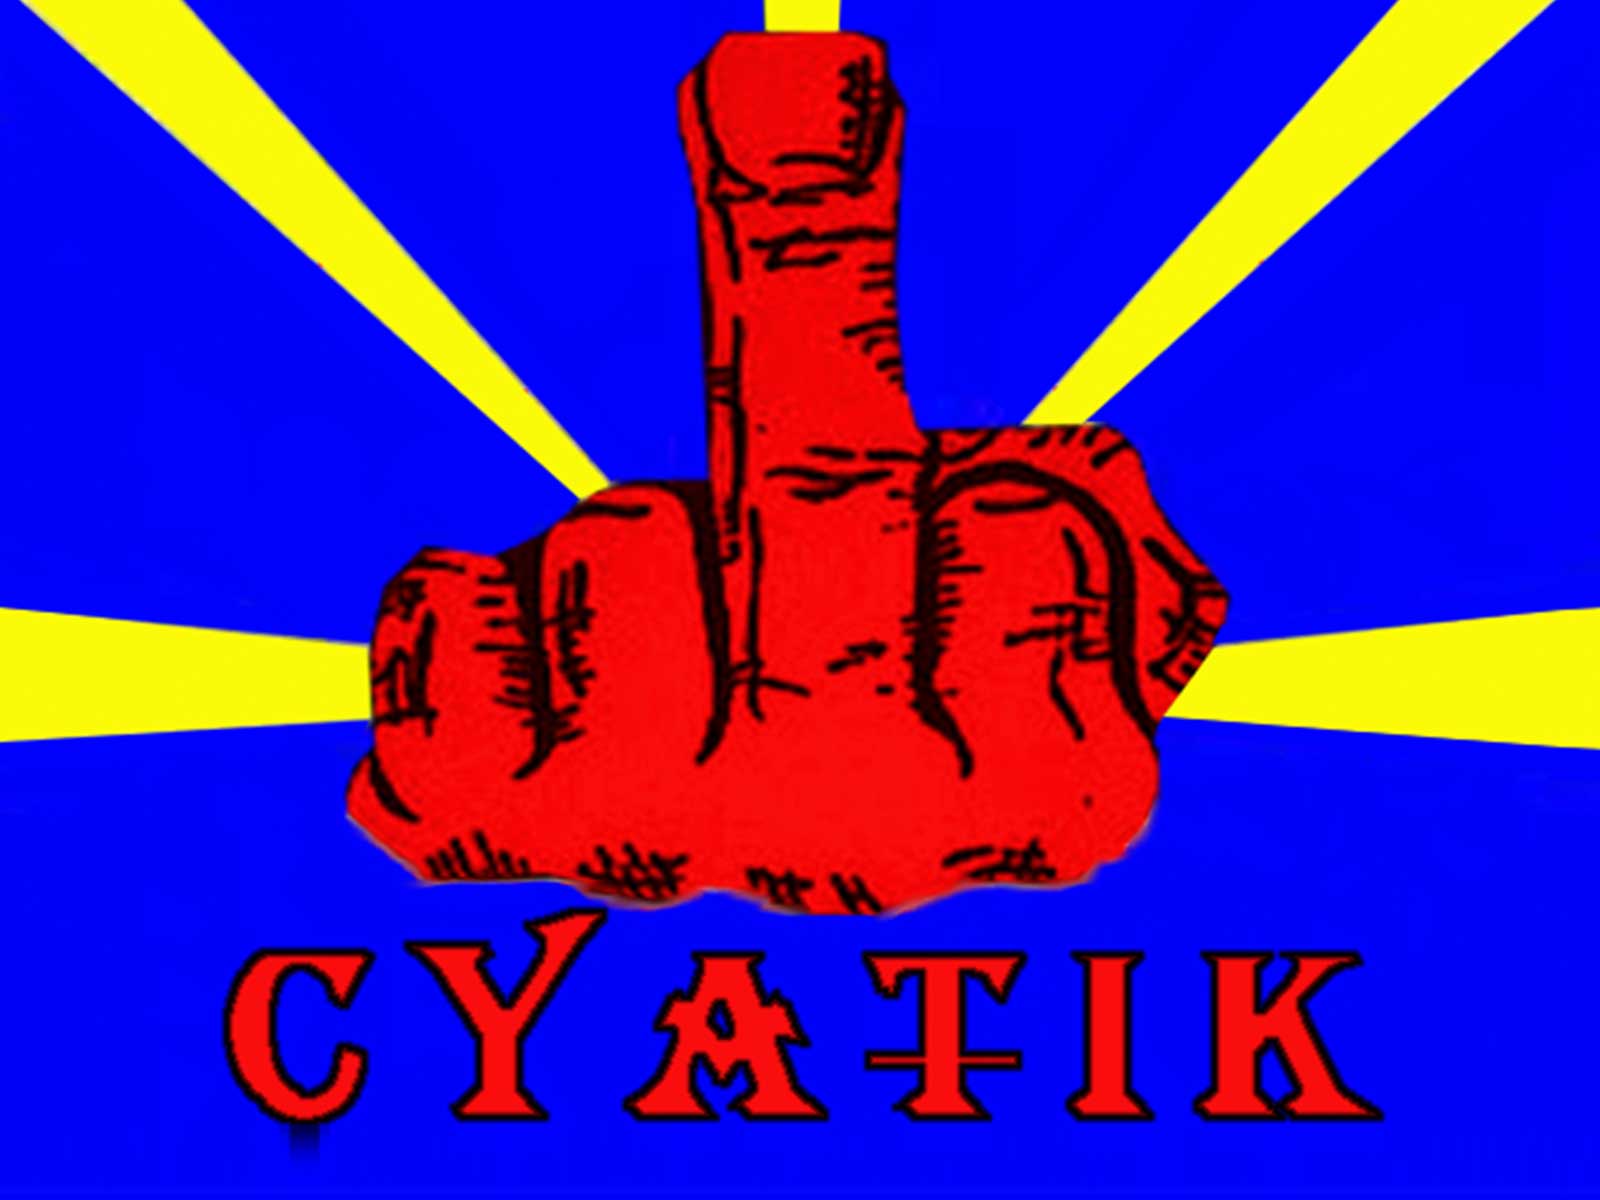 cyatik-image_vignette